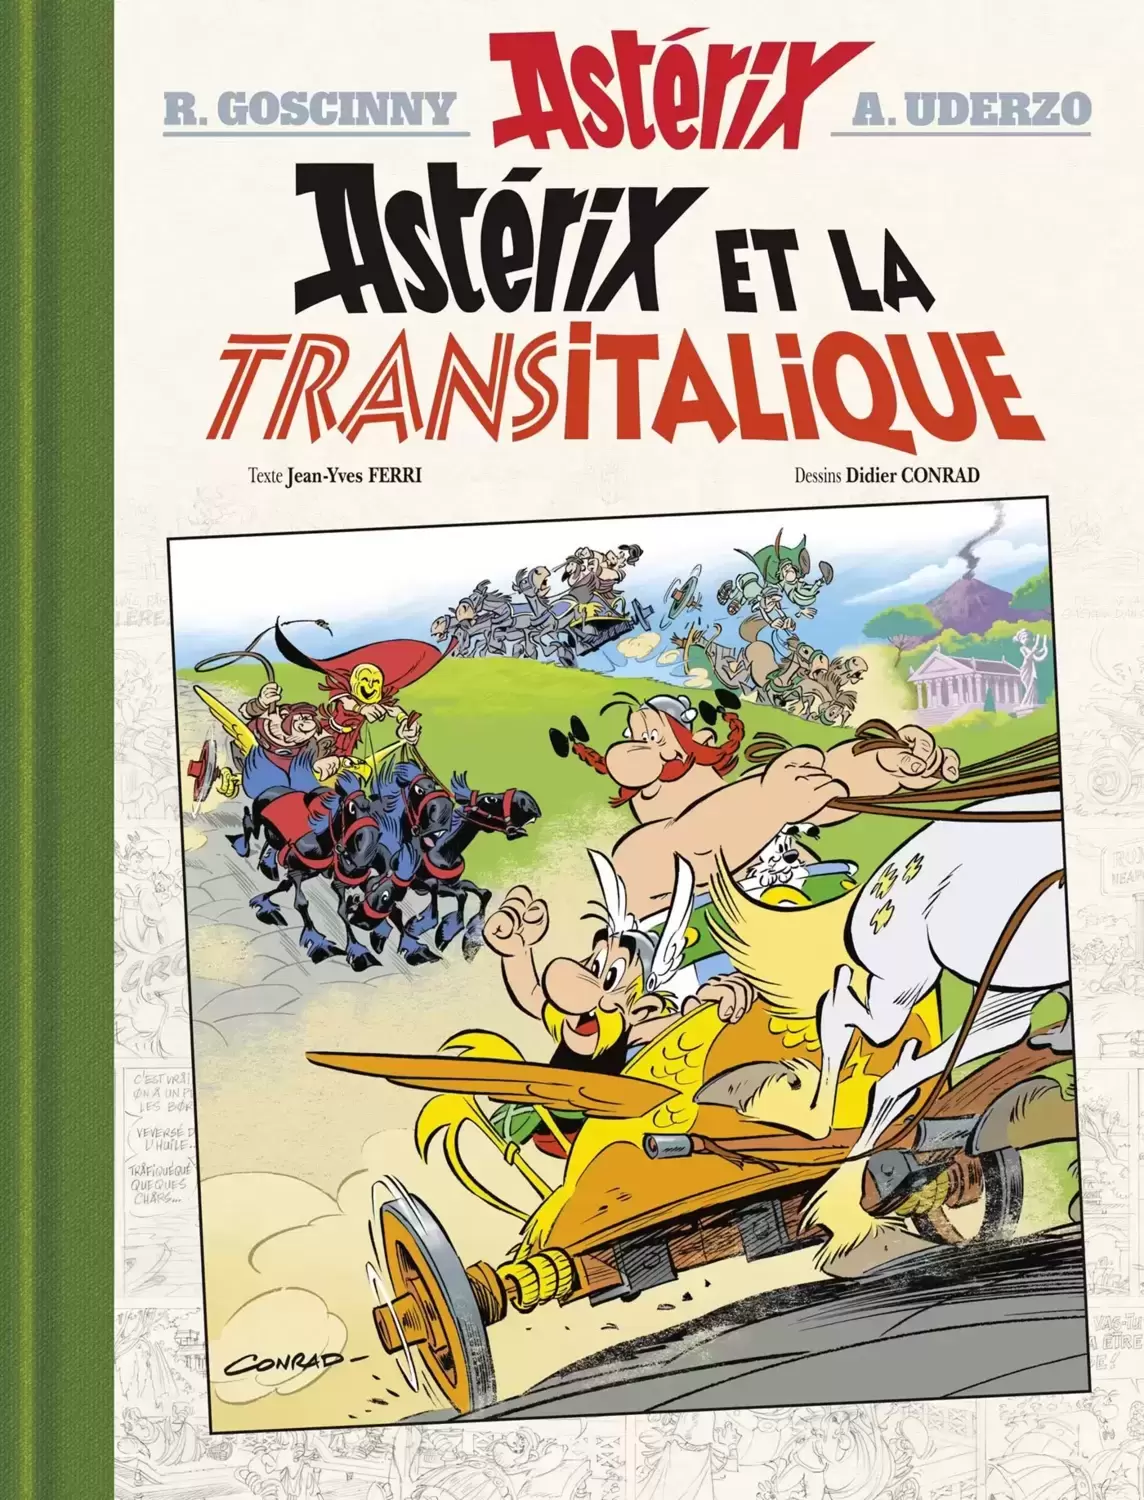 Astérix - asterix et la transitalique version luxe